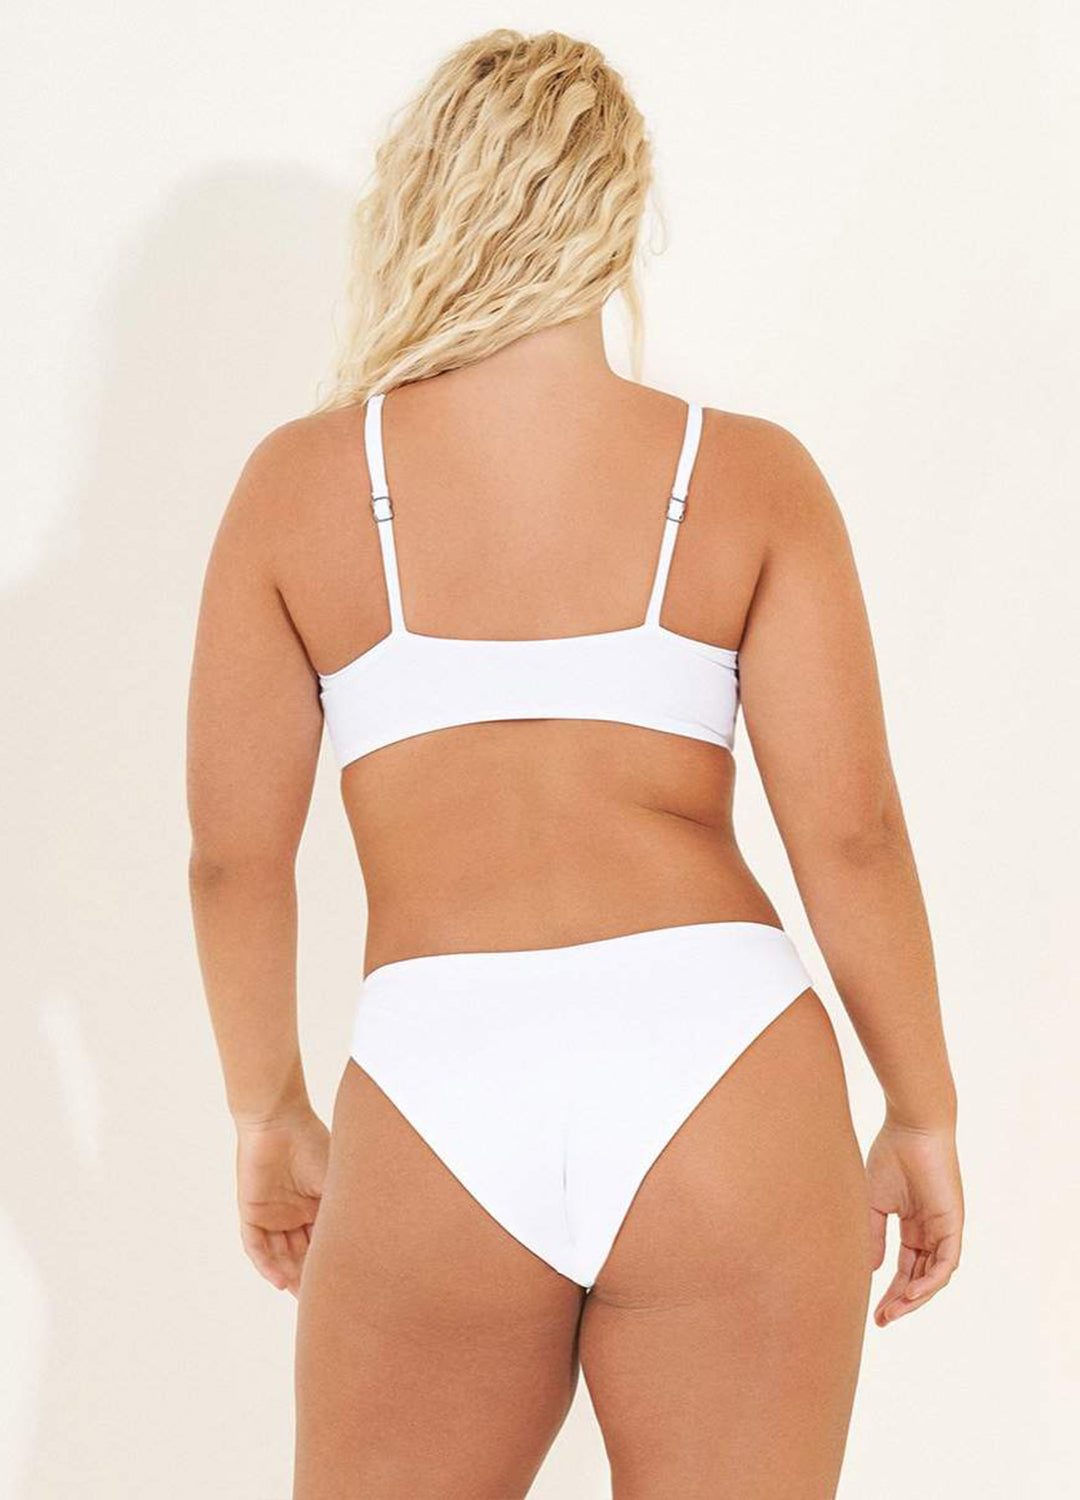 Colette Fixed Triangle Bikini Top - Simply White